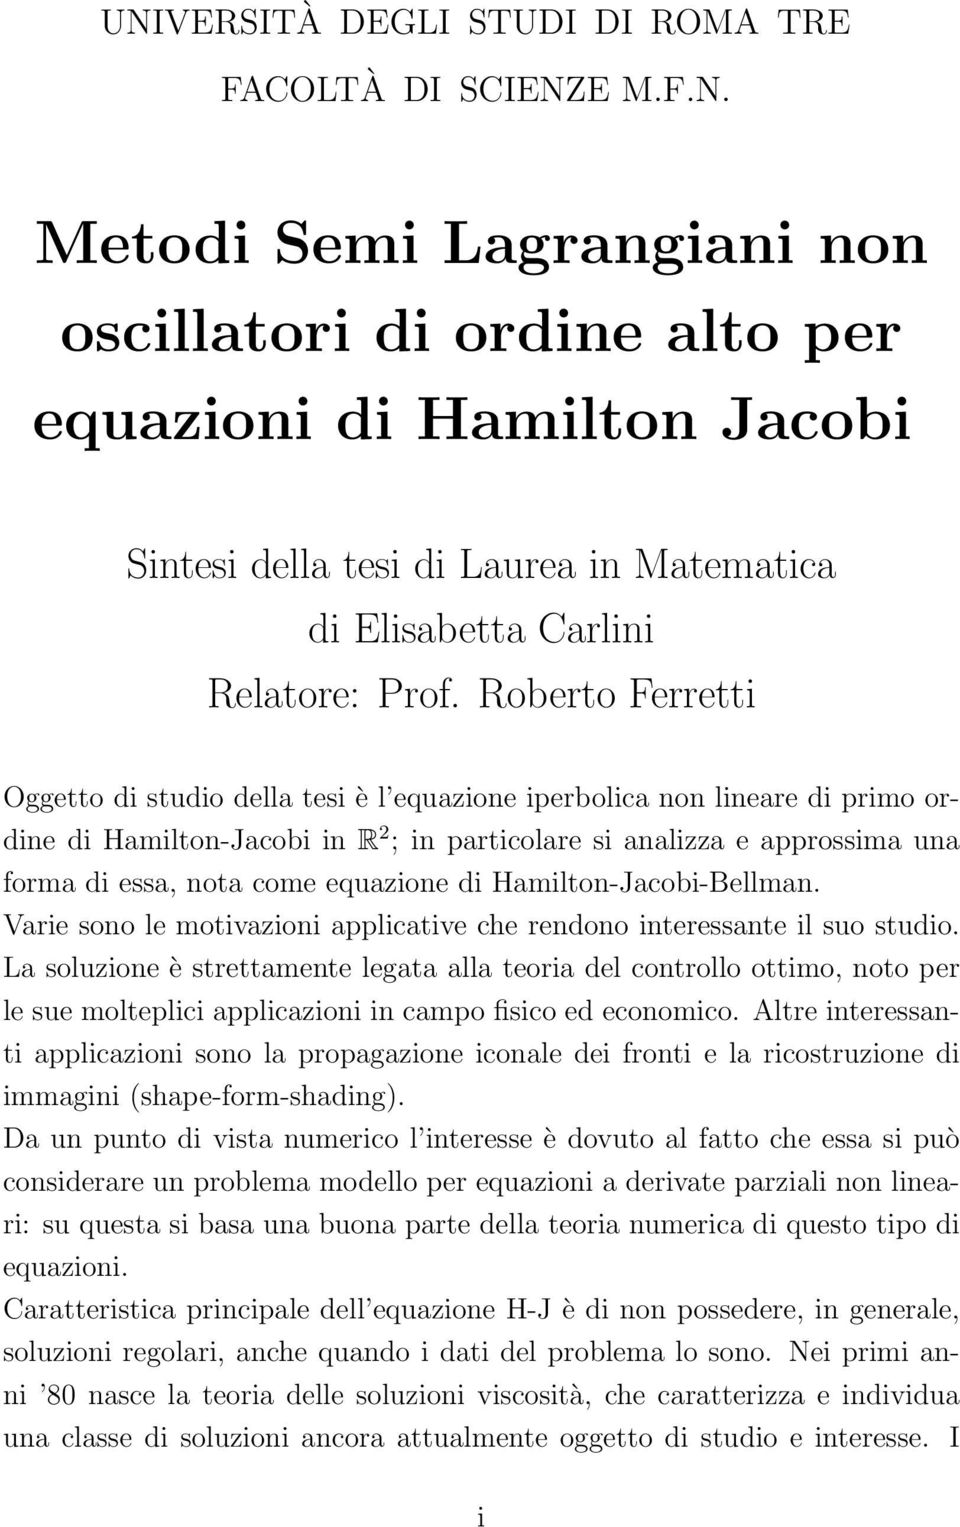 equazione di Hamilton-Jacobi-Bellman. Varie sono le motivazioni applicative che rendono interessante il suo studio.